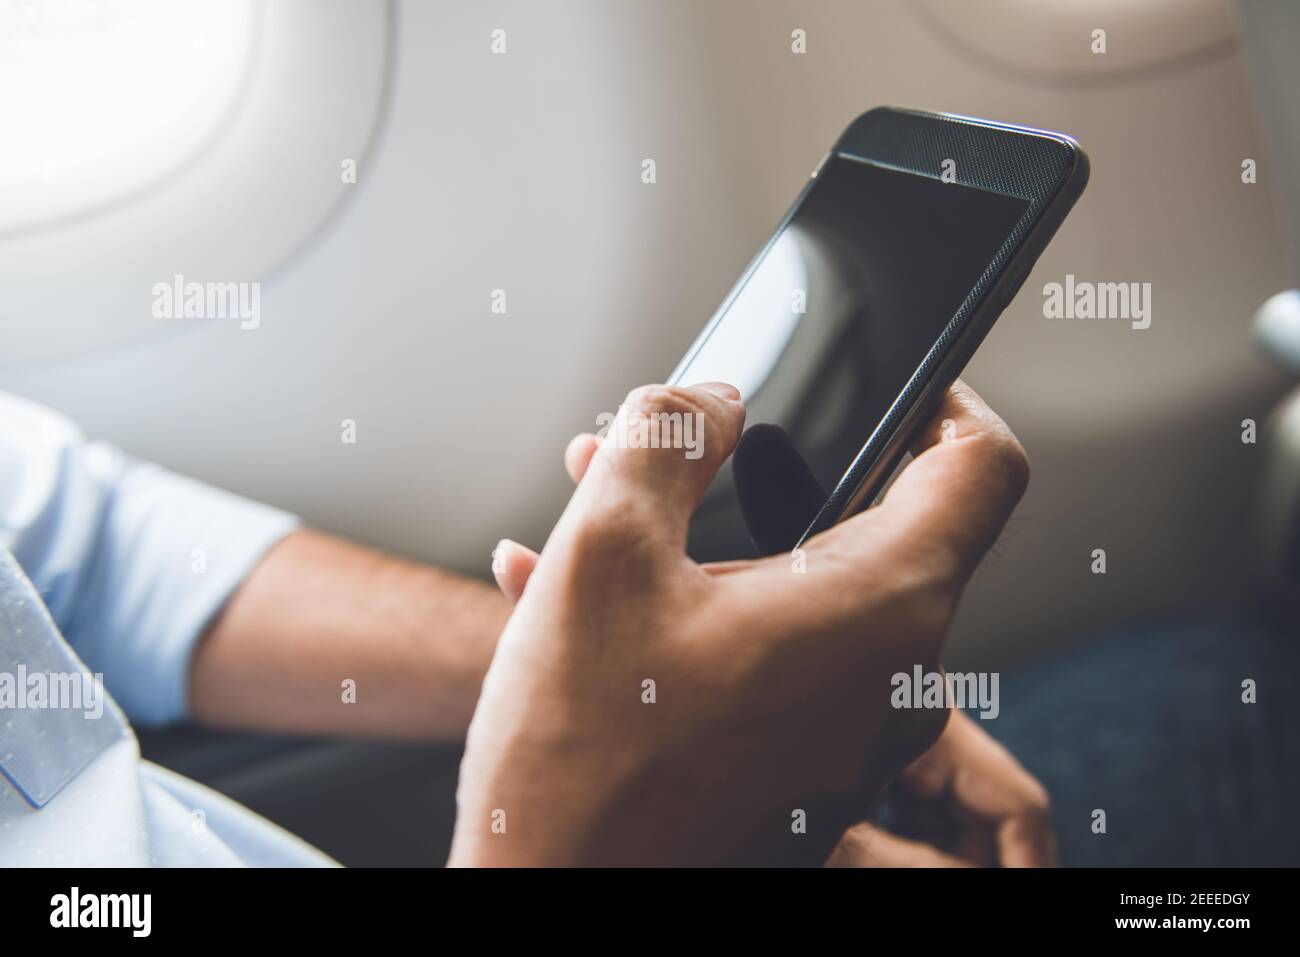 Il passeggero maschile ha appena spento il telefono cellulare sull'aereo durante il viaggio per un volo sicuro Foto Stock